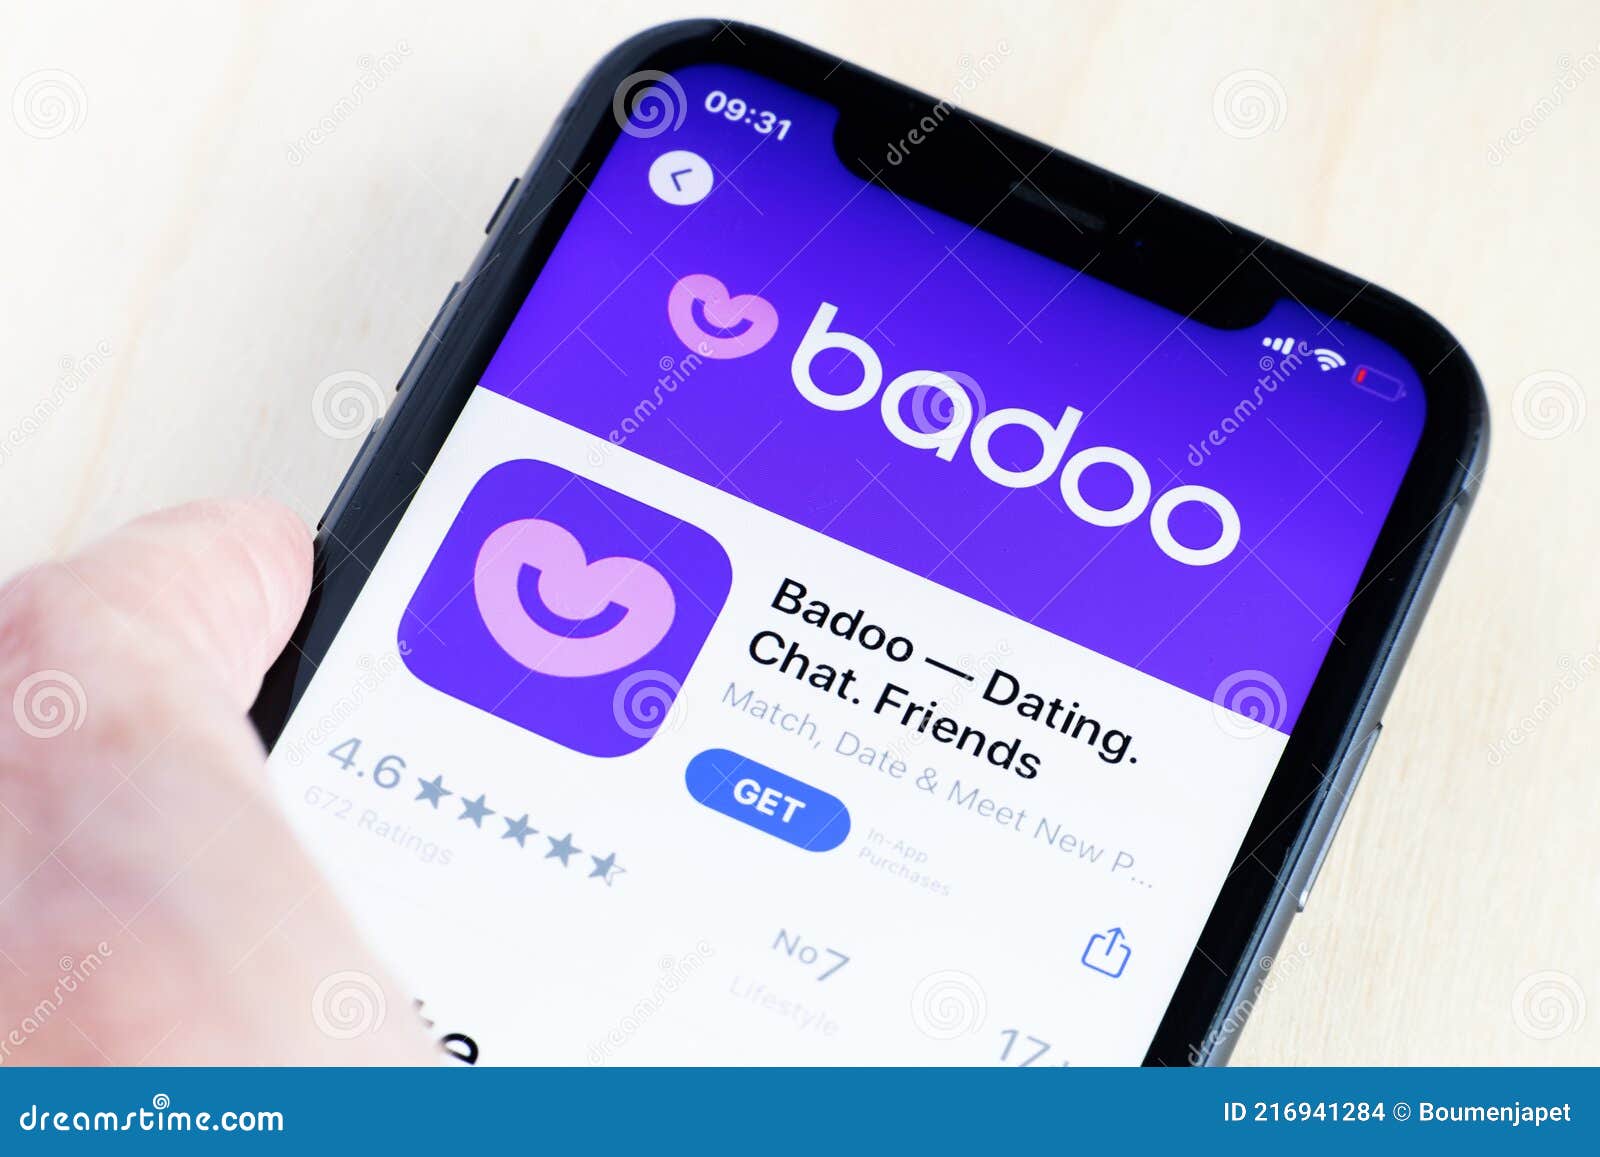 Com.badoo.mobile af_tranid id referrer Steller story